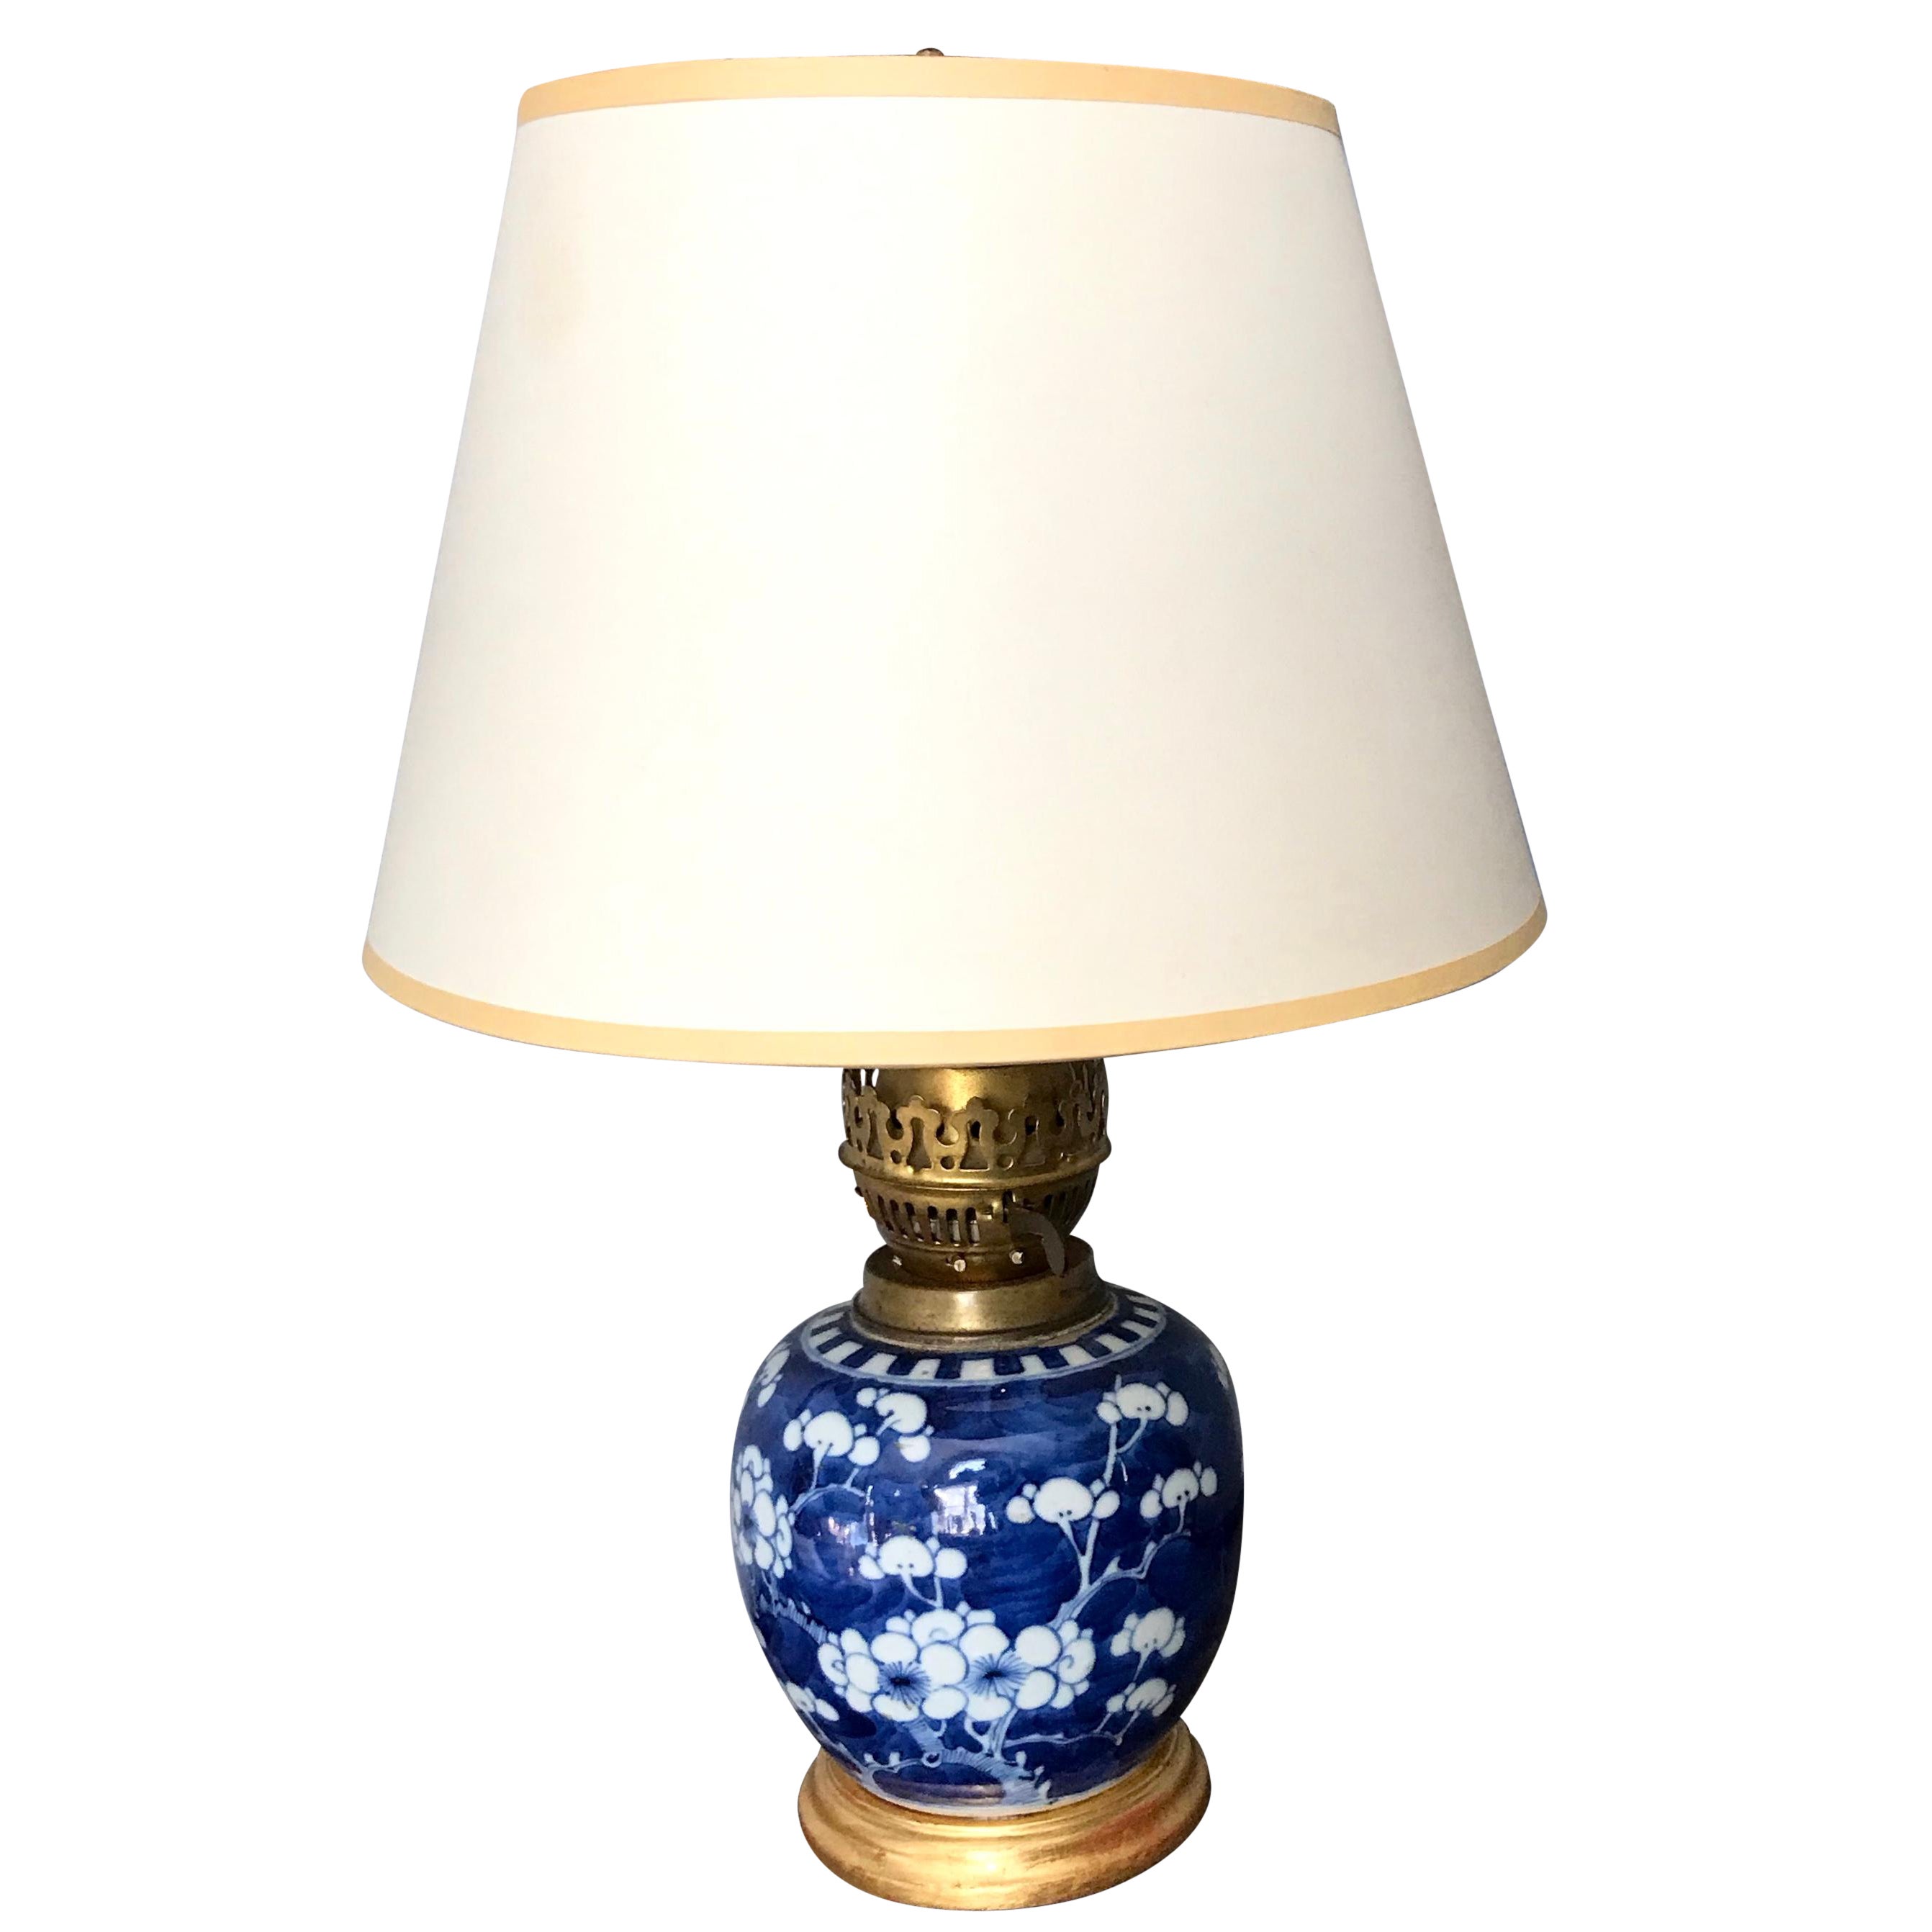 Lampe vase en forme de fleur de cerisier bleue et blanche sur socle en bois doré